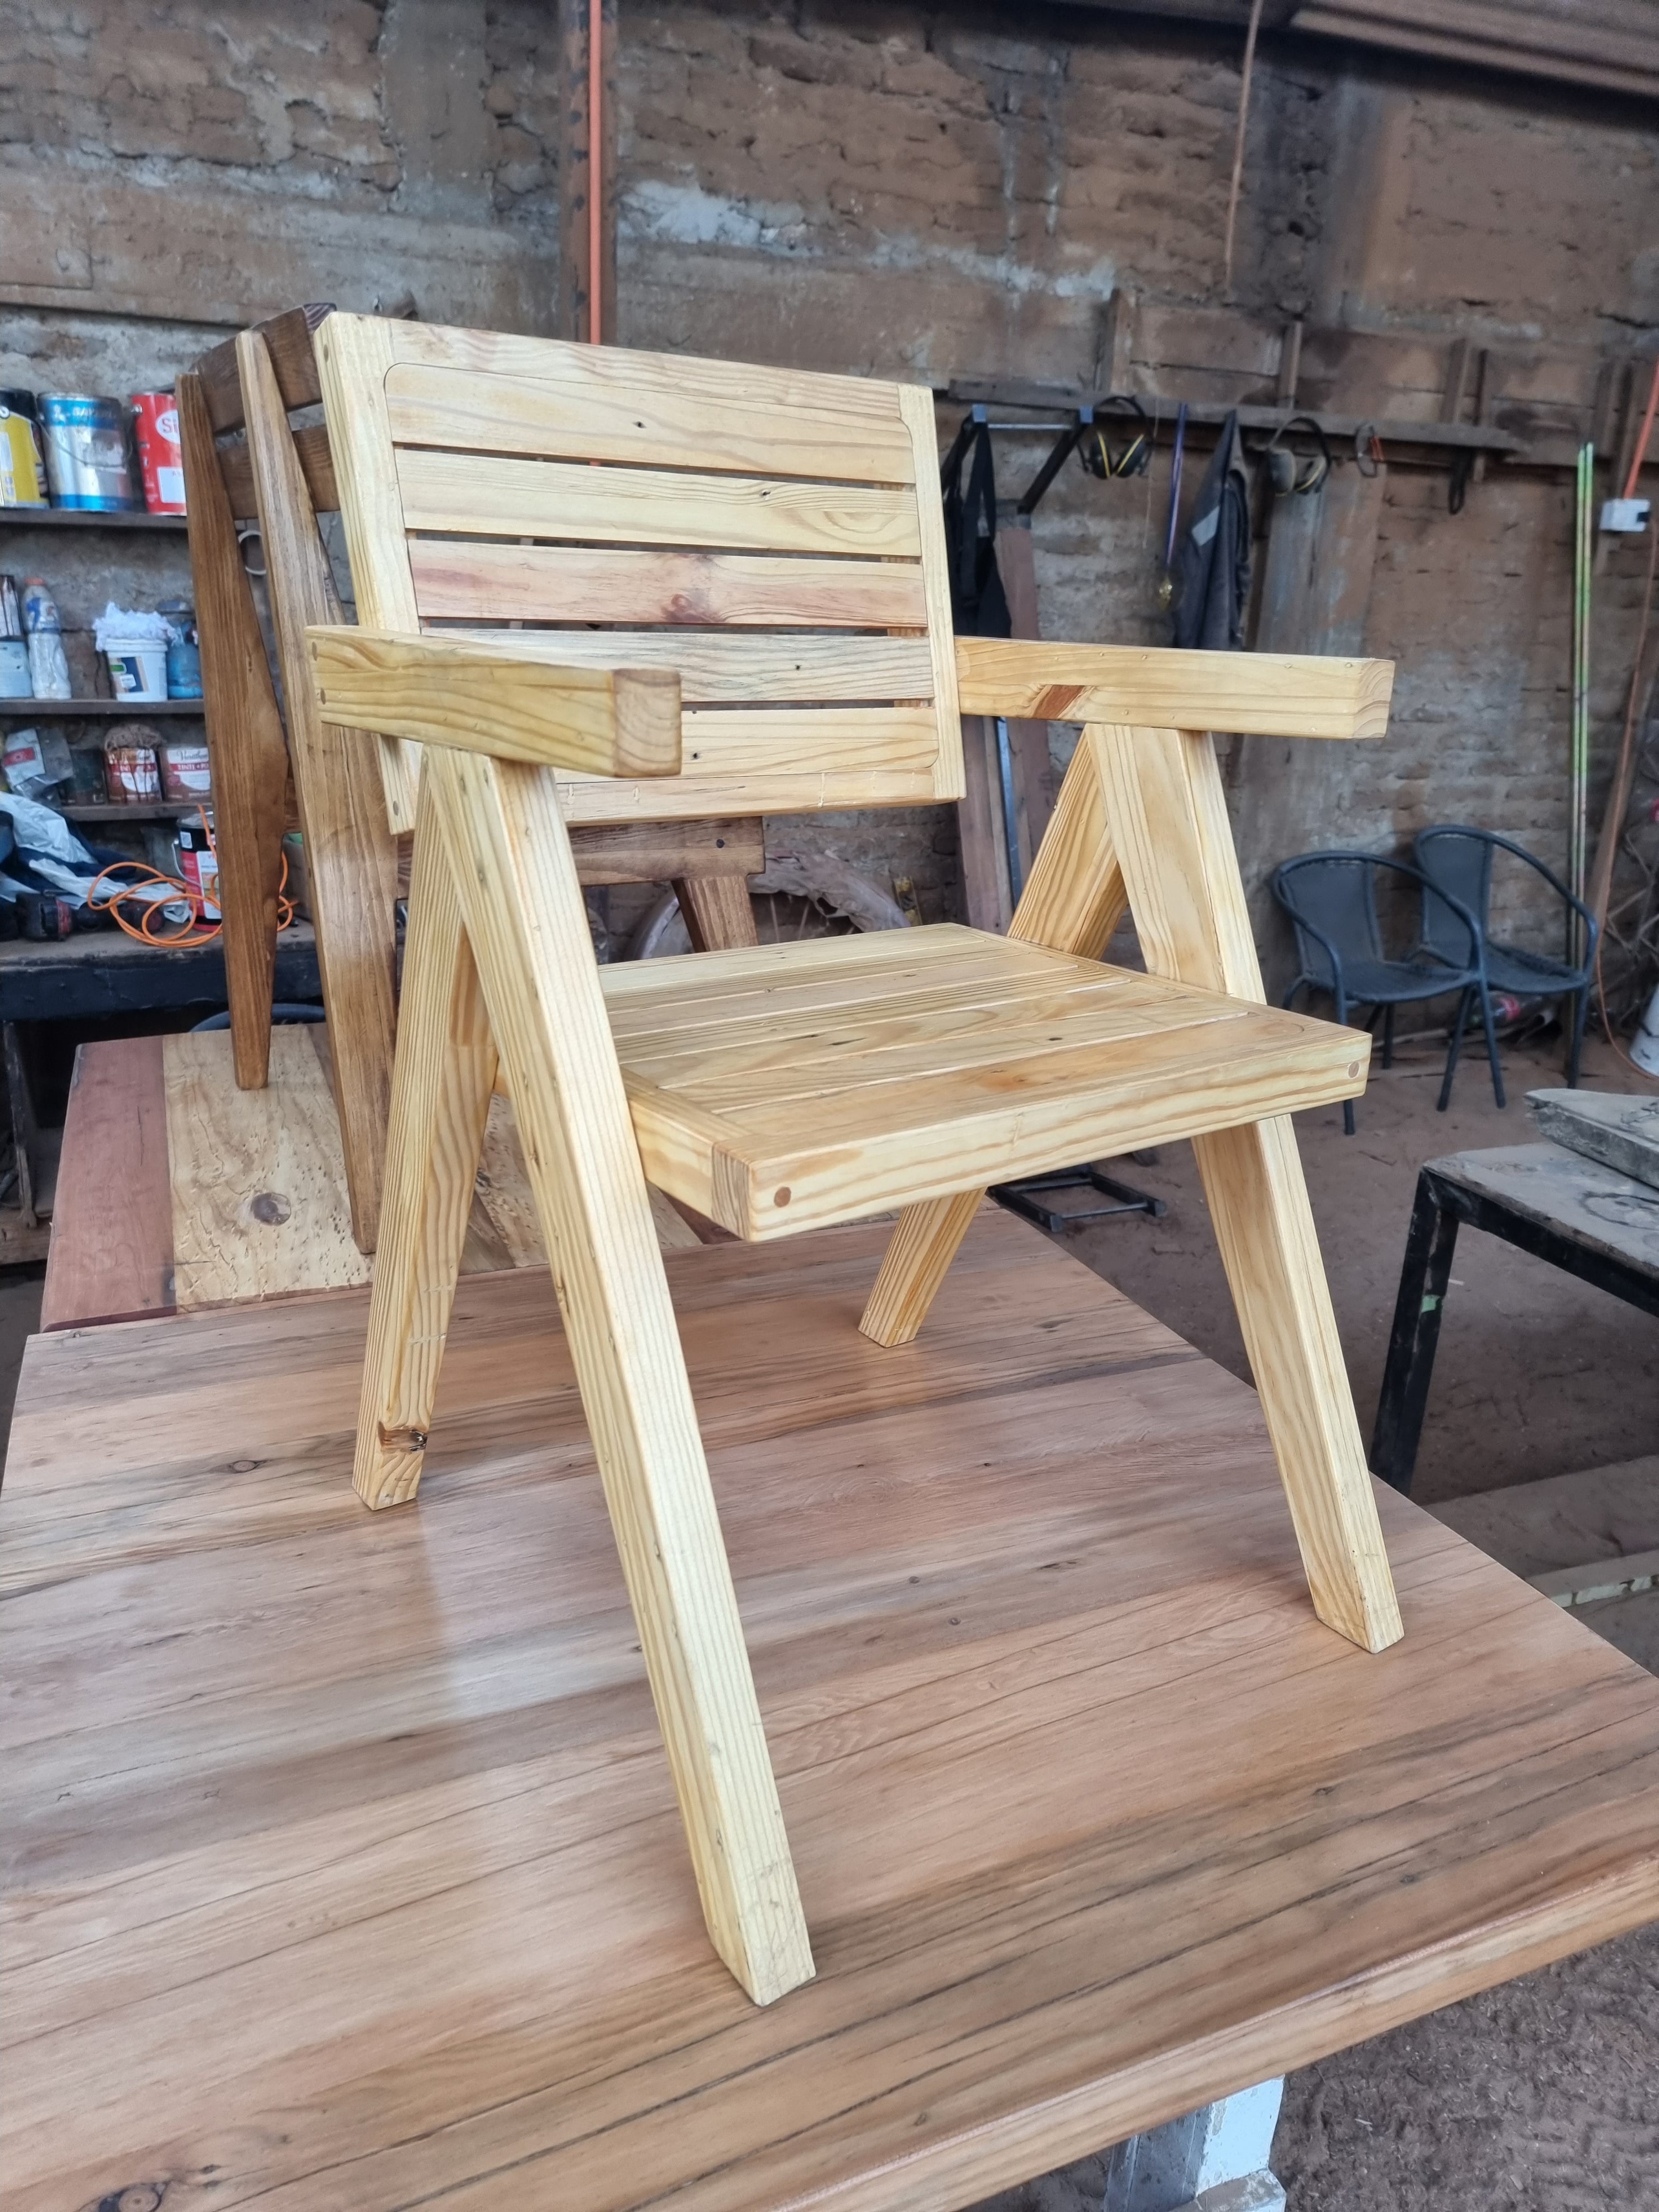 Silla reclinable de madera nórdica, sillas de salón de diseñador